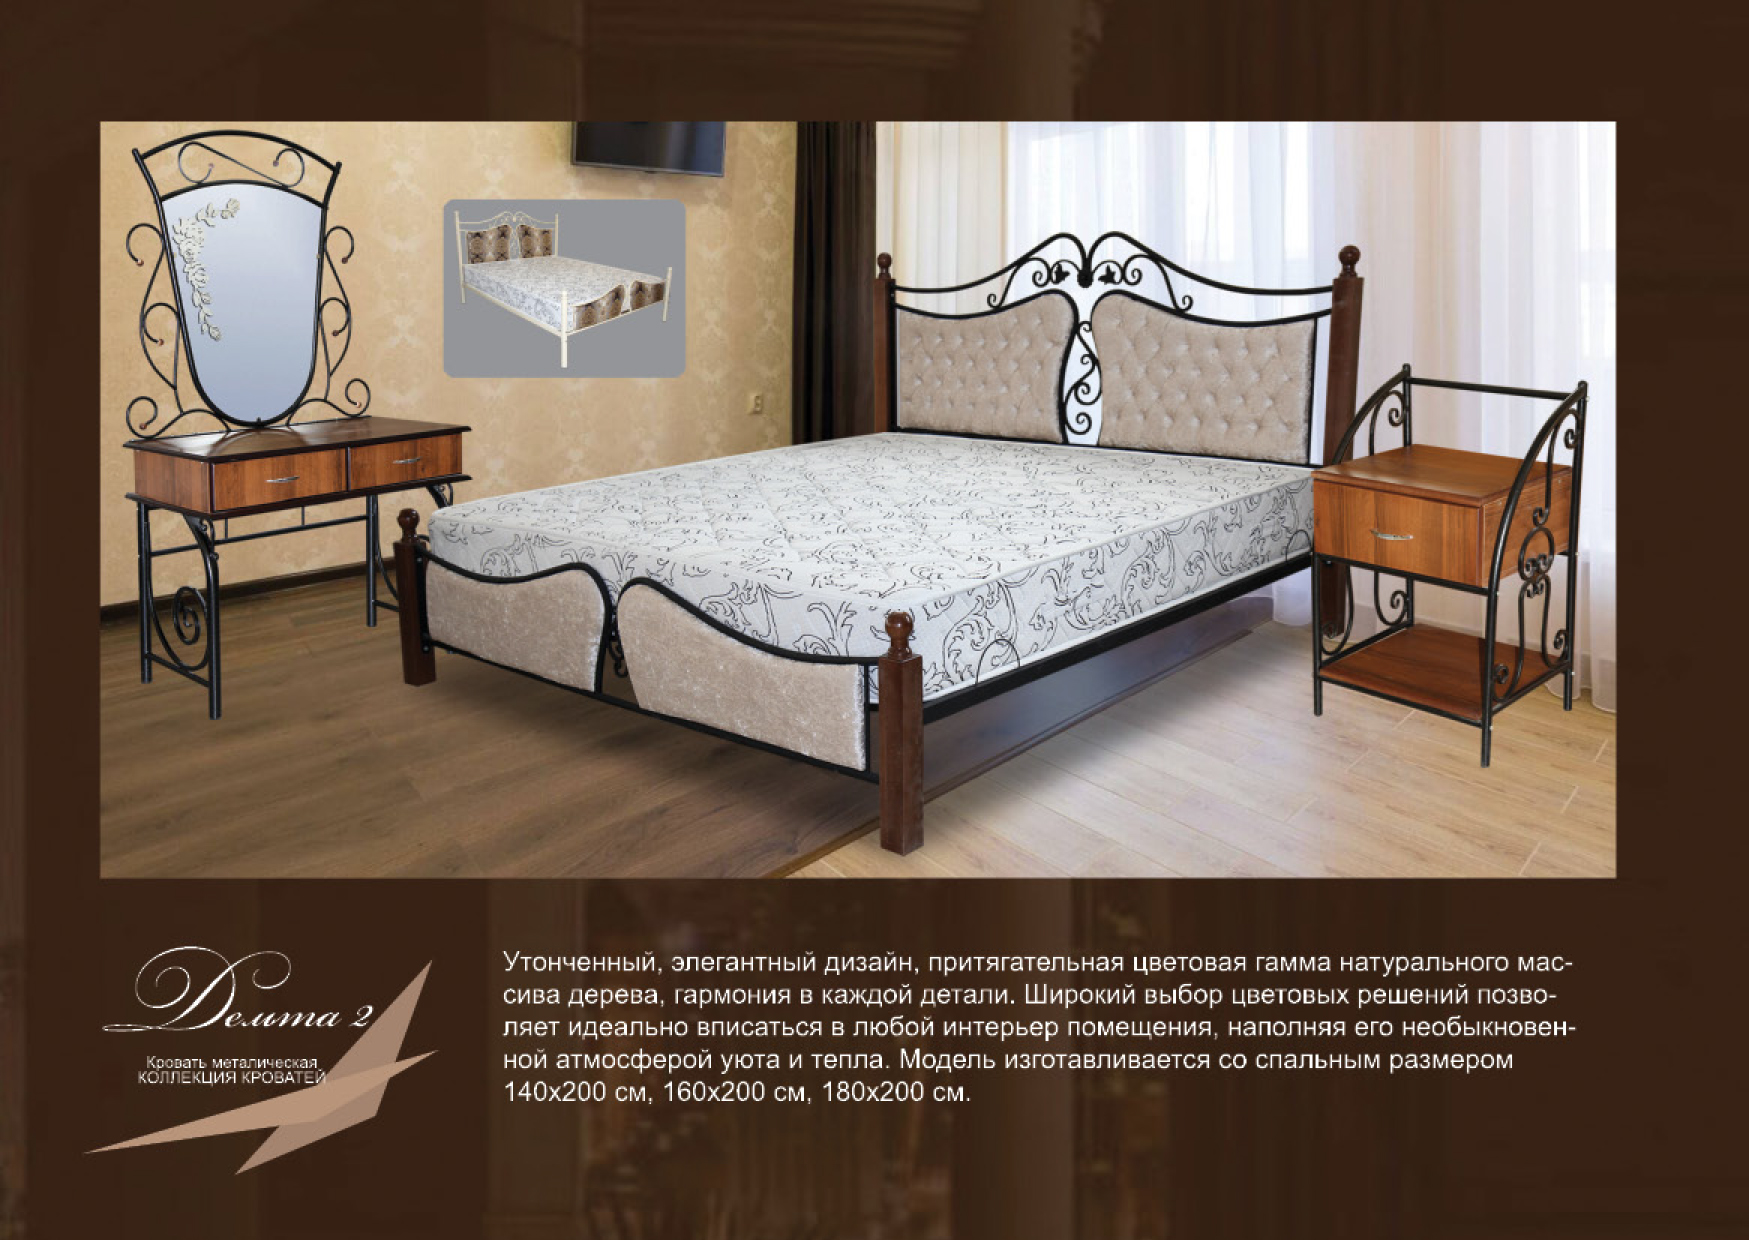 Кровать металл+древо с мягкой оббивкой "Дельта-2"